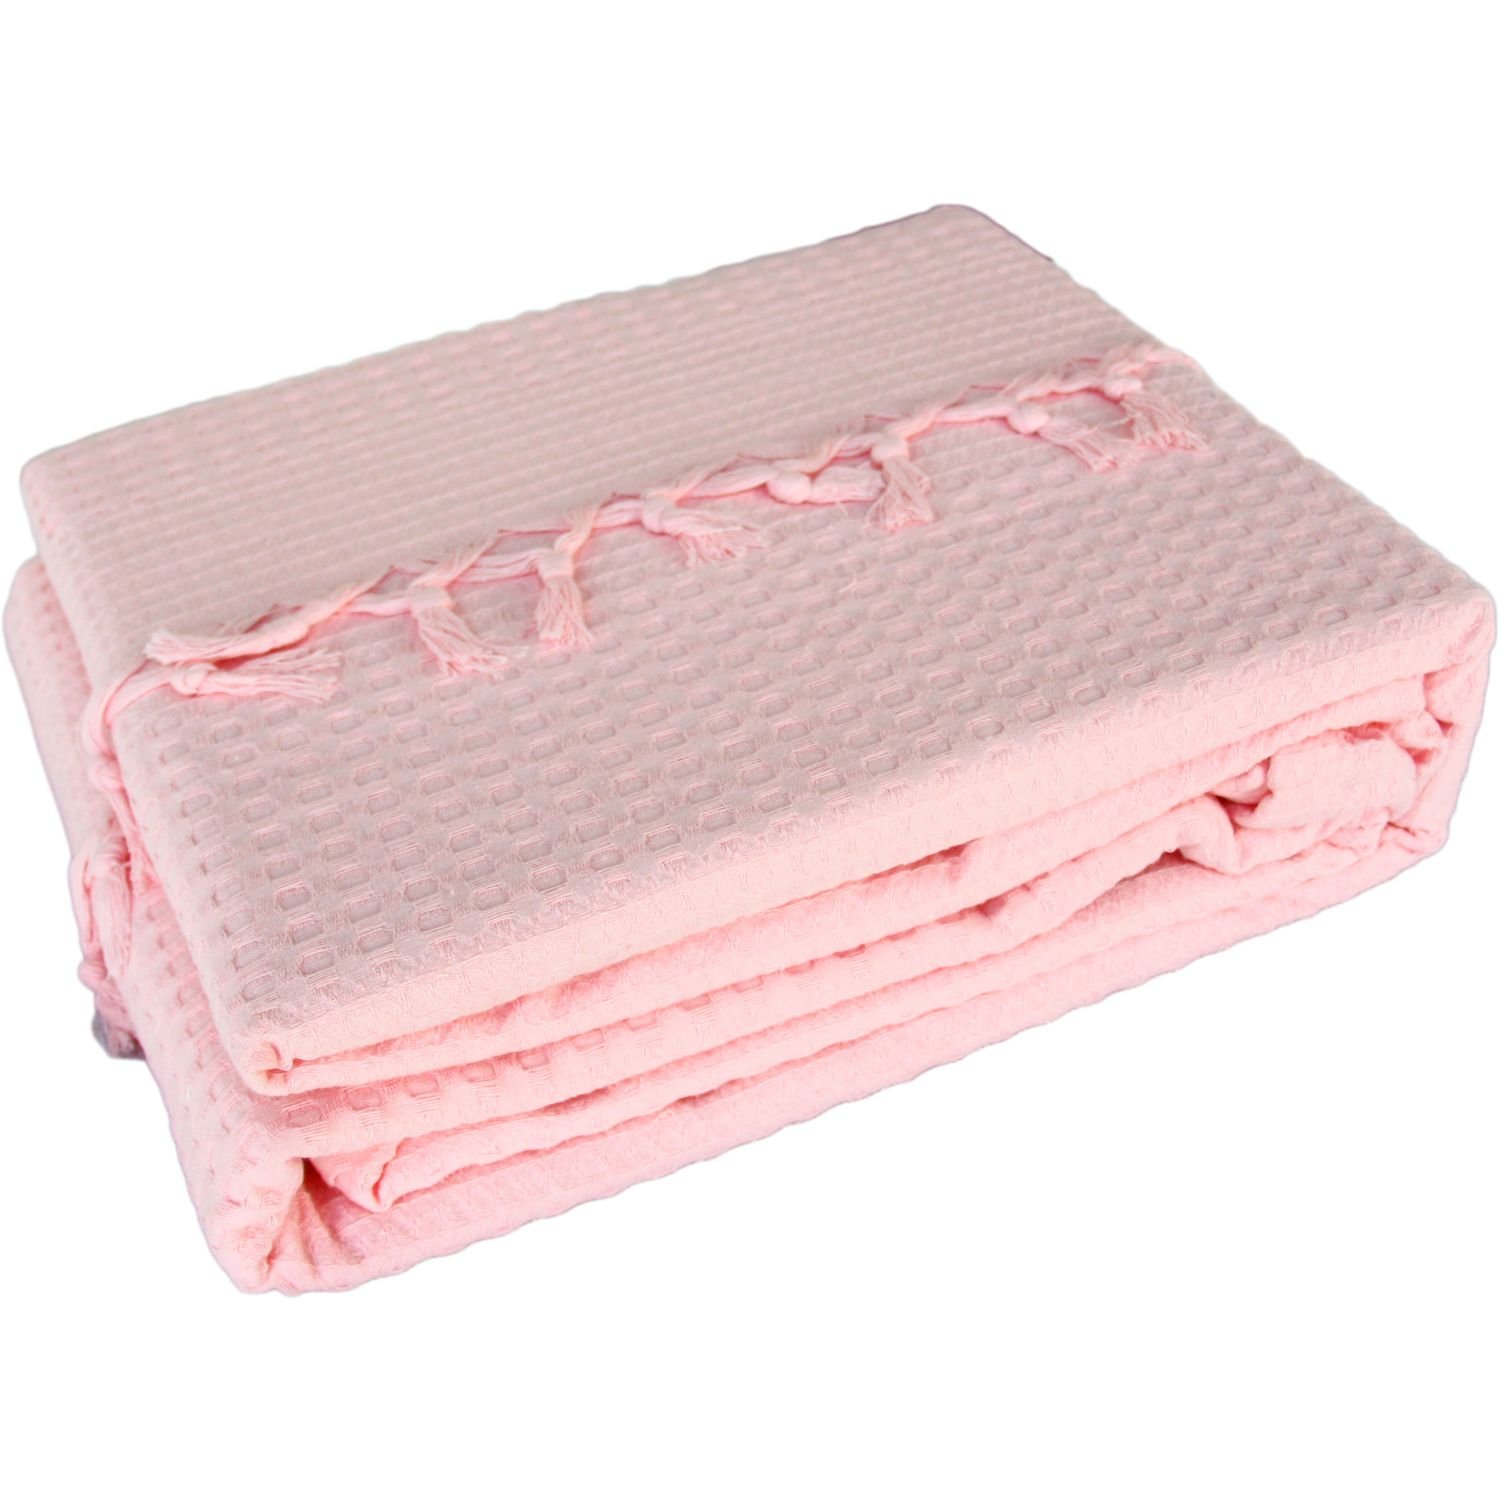 Покривало-плед с бахромой Izzihome Checkers, пике, 240х220 см, нежно-розовый (602541) - фото 3